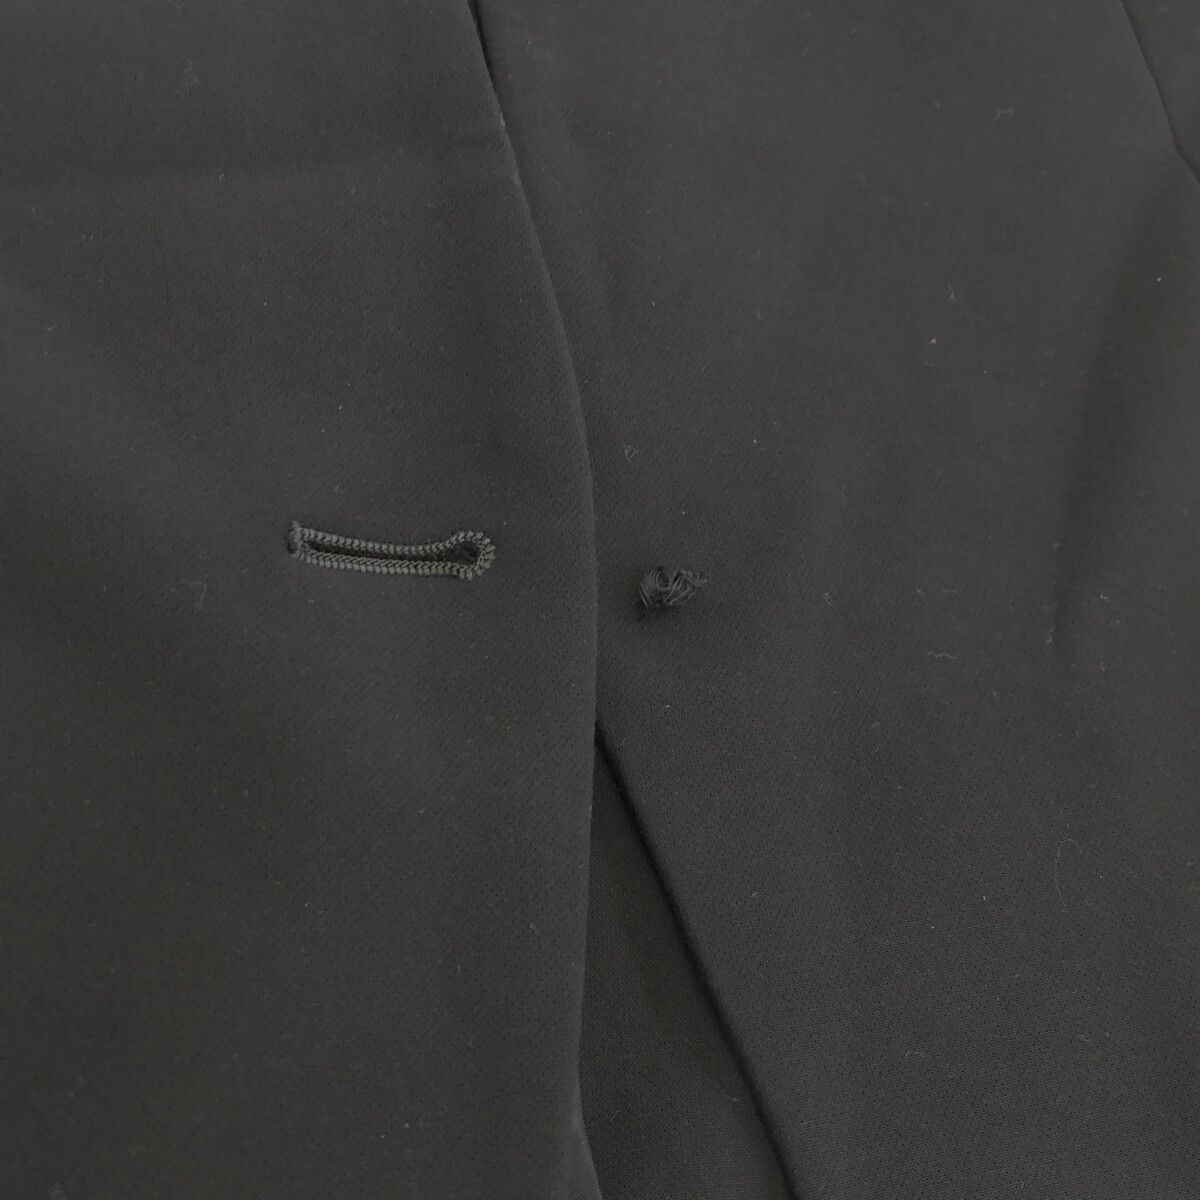 【 обстоятельства ...】 ANCHOR ... машина   пиджак  ... цвет   кнопка   длинный рукав    красивый ...  женский   черный  11 901-5011  доставка бесплатно   бу одежда 